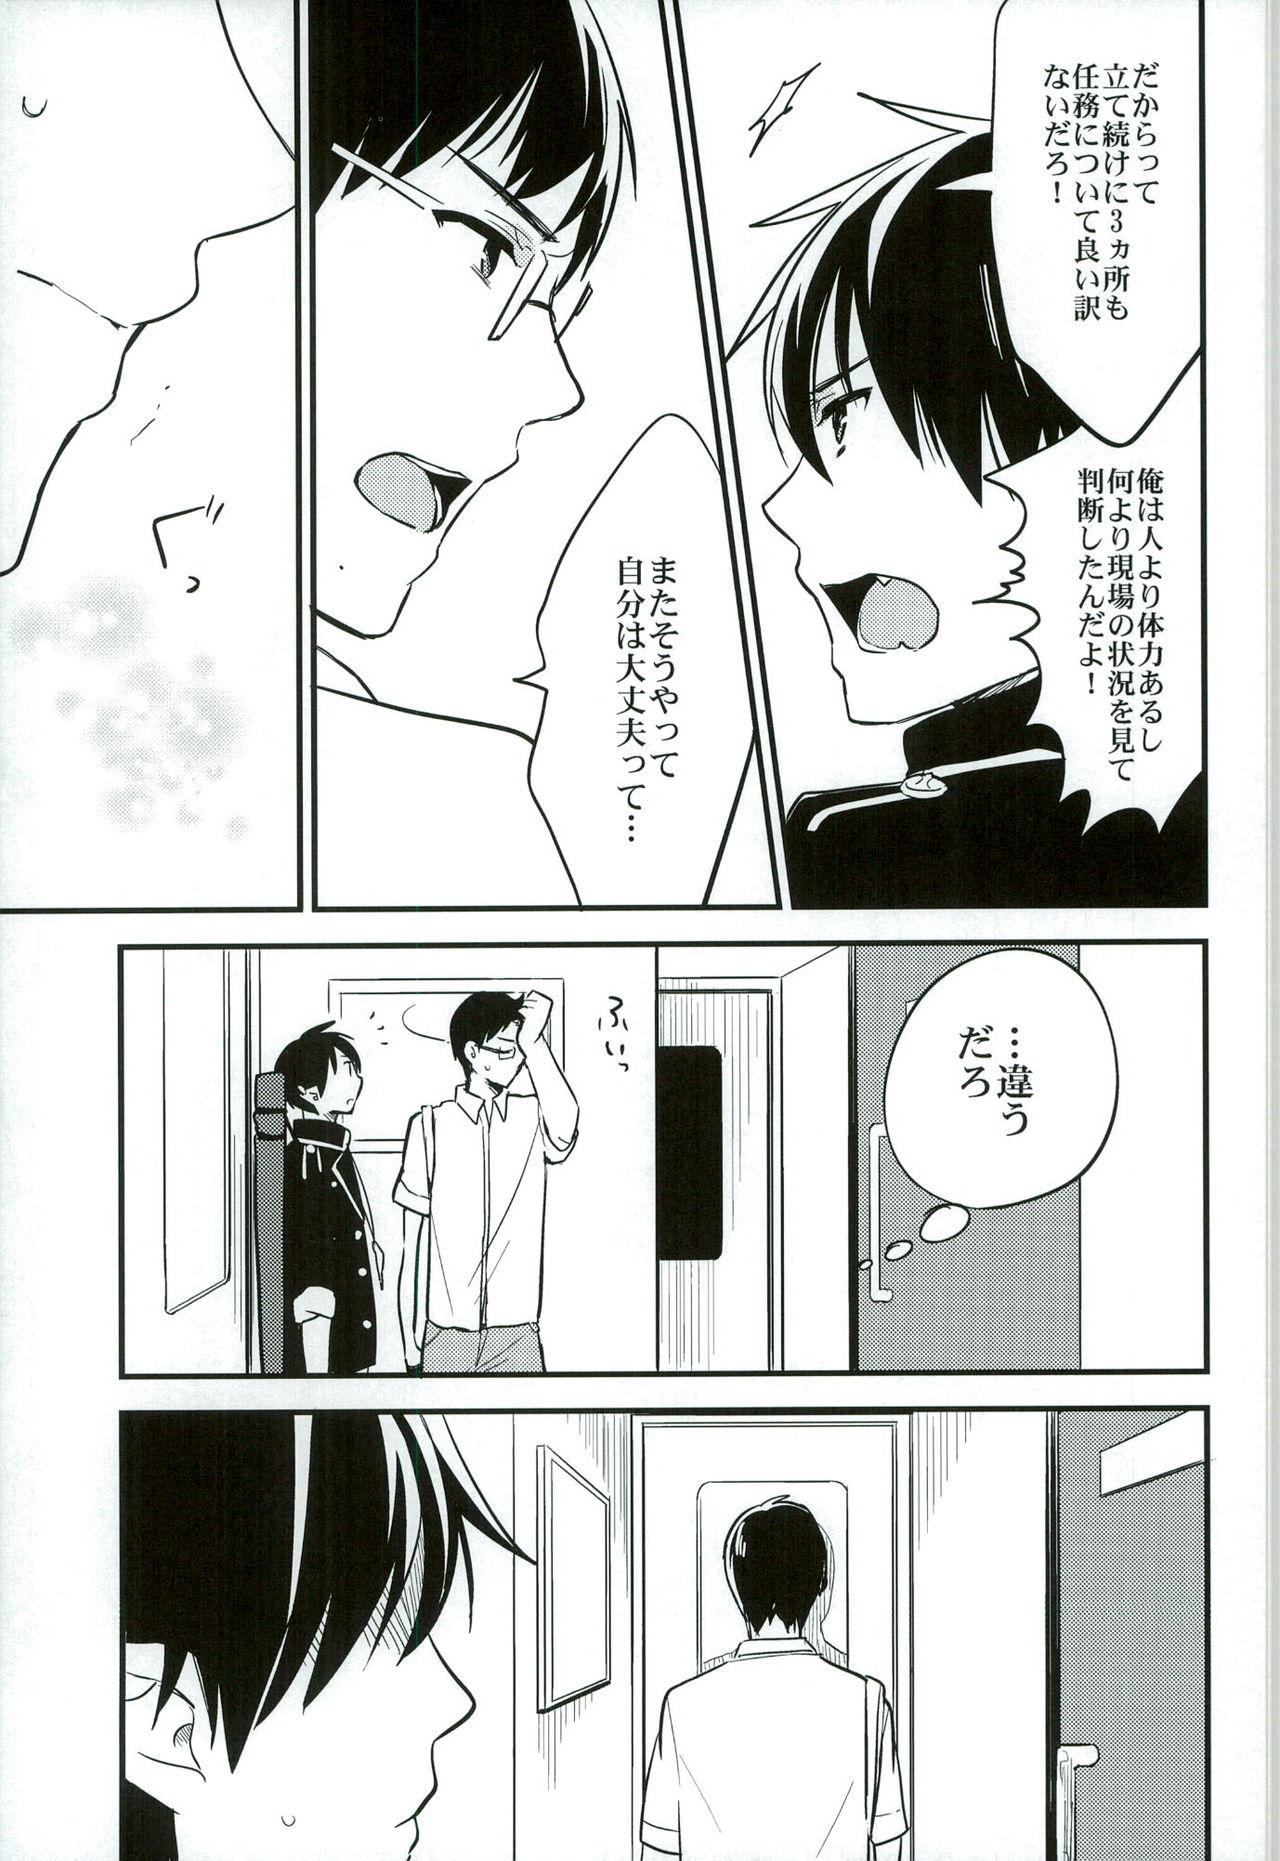 Boyfriend Otona ni Natte Futari - Ao no exorcist Masterbate - Page 11